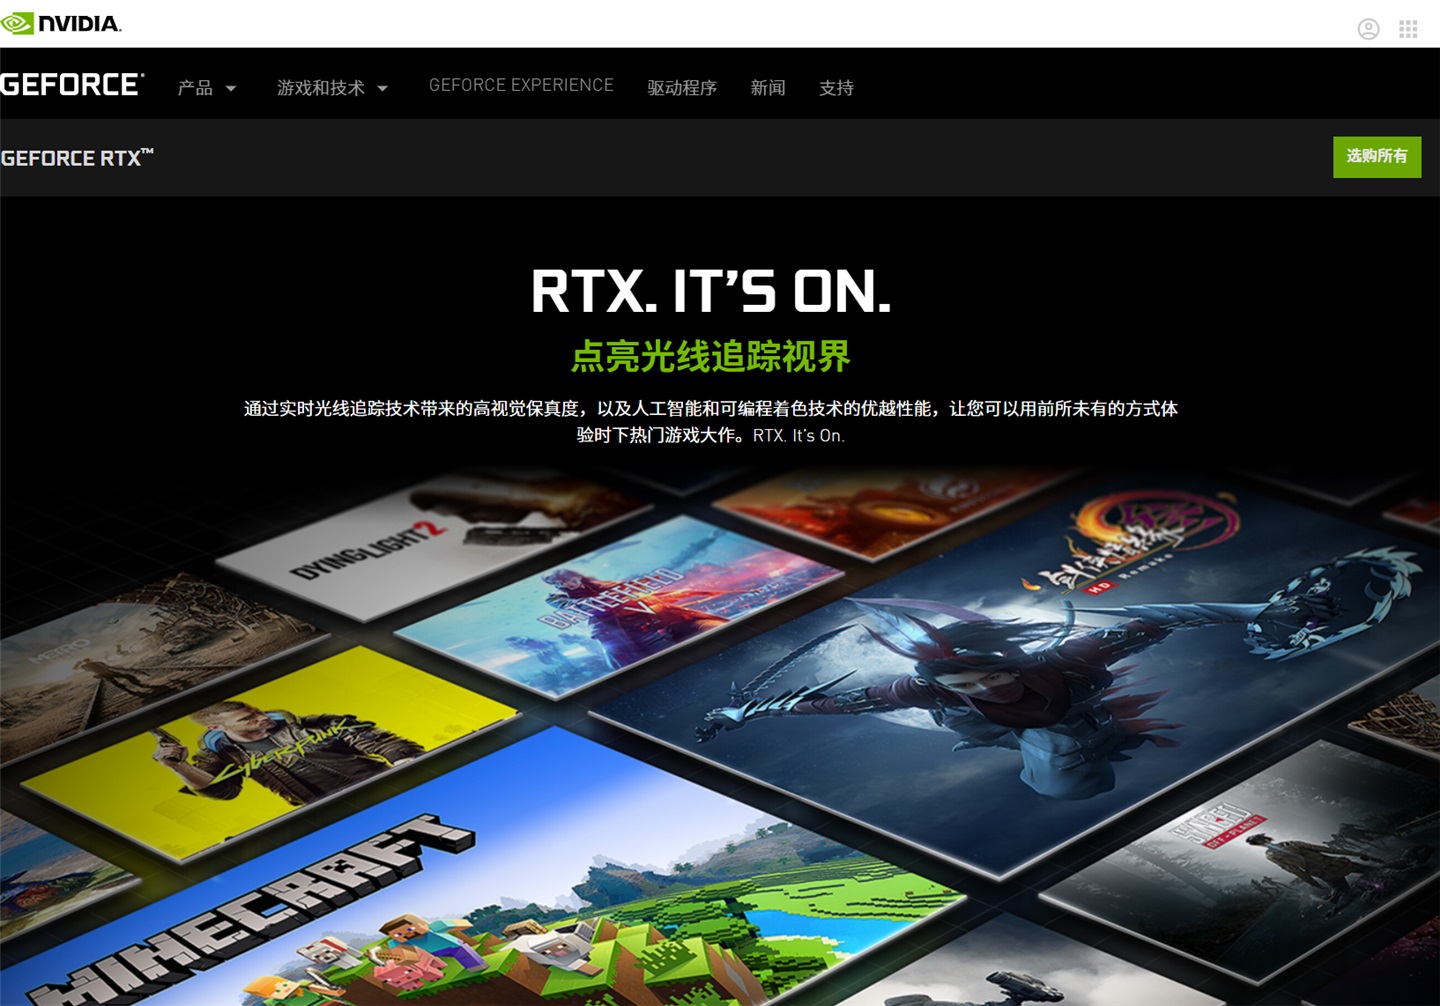 英伟达宣布未来支持 RTX 光追和 DLSS 的新游戏